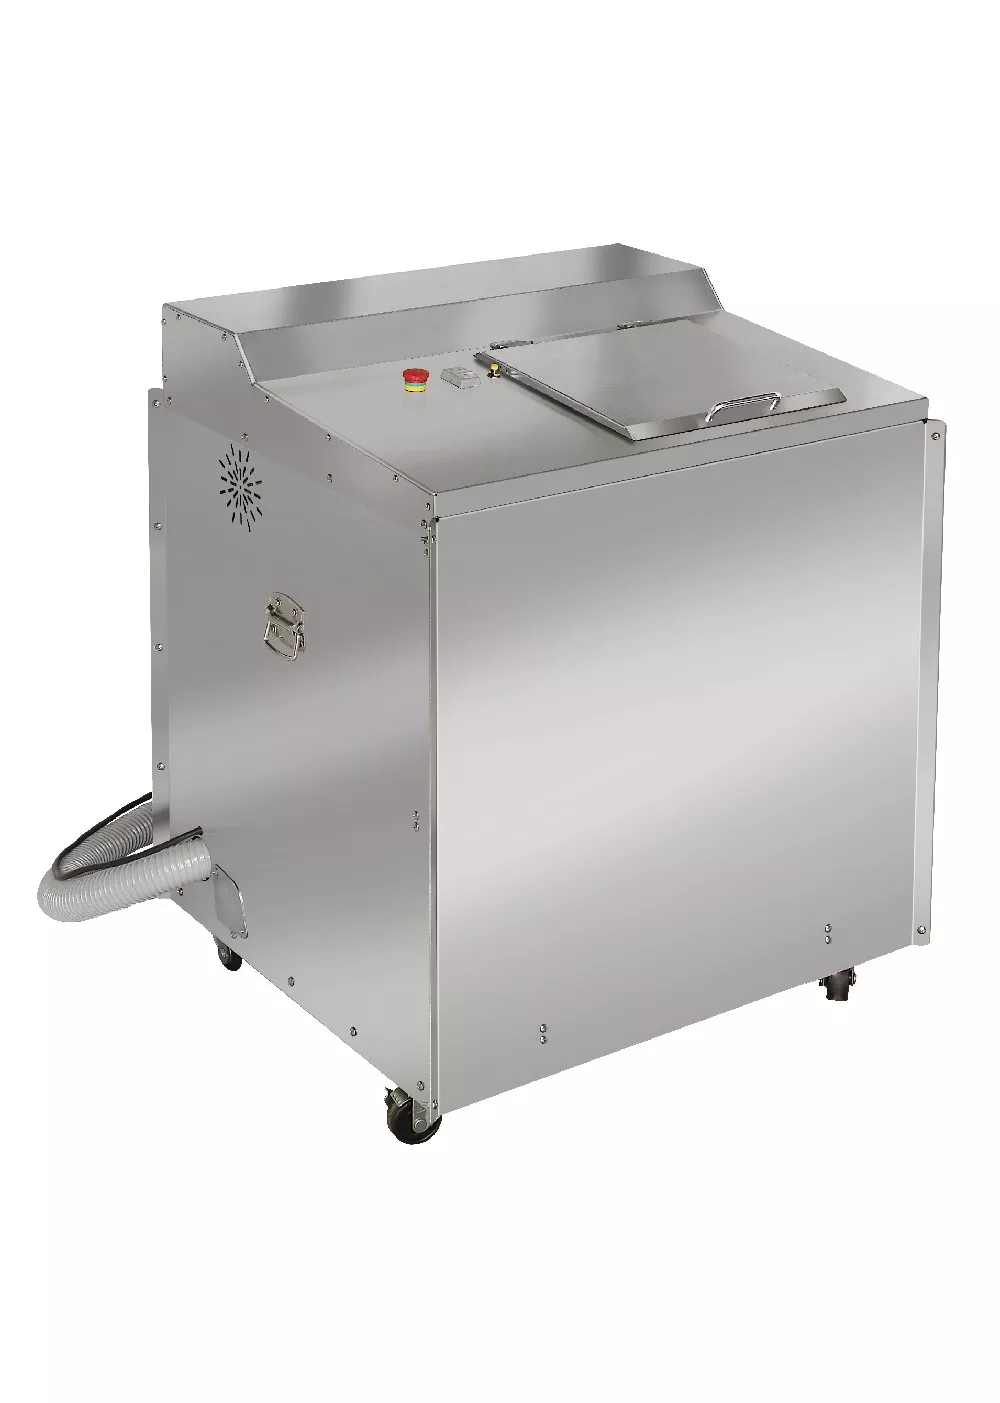 商用廚餘處理機展示介紹,機型TKK01 規格如下TKK01-120 乾燥研磨型廚餘處理容量為120公升 food waste disposer